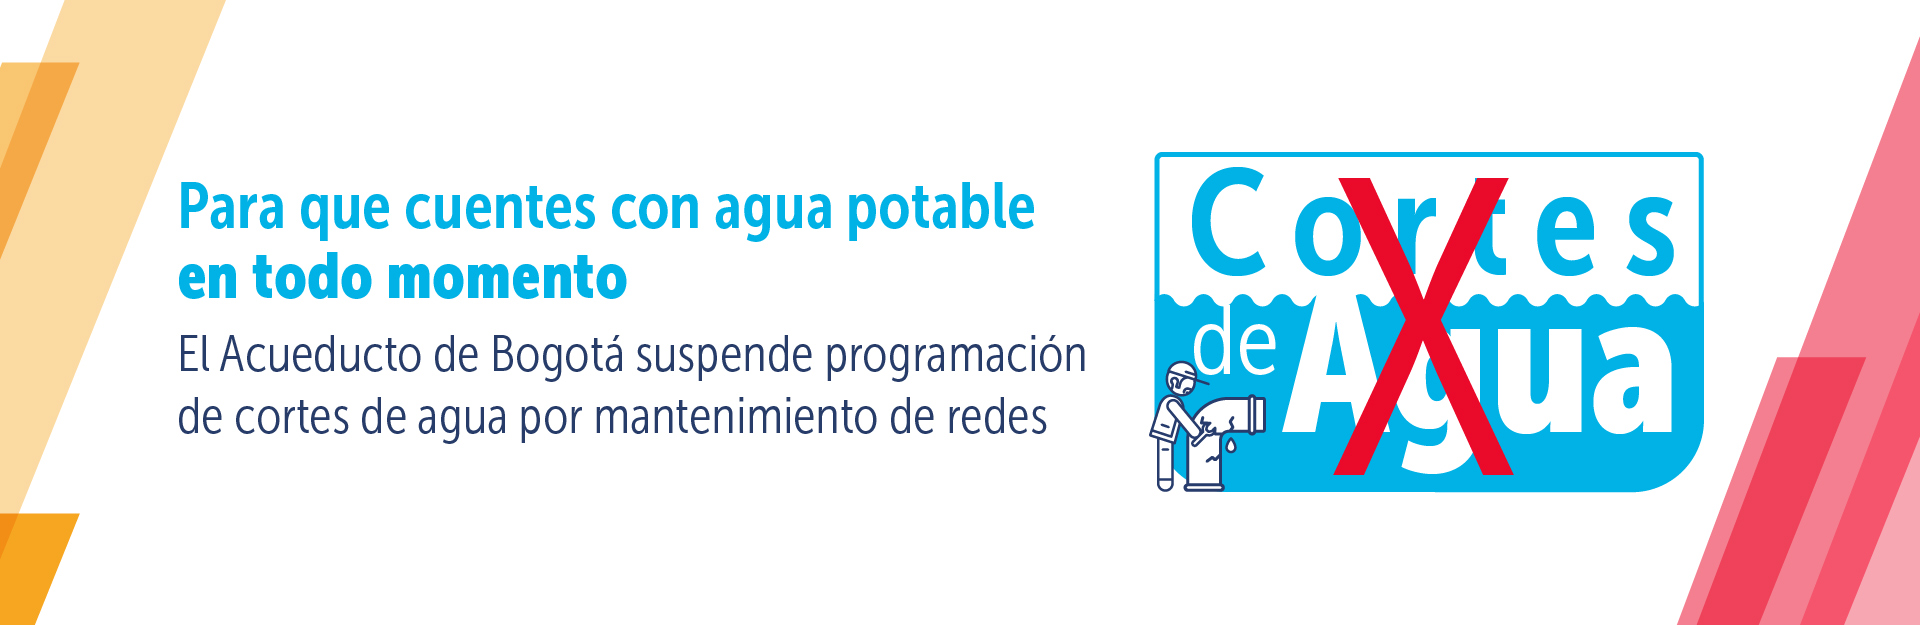 Acueducto de Bogotá suspende programación de cortes de agua por mantenimiento